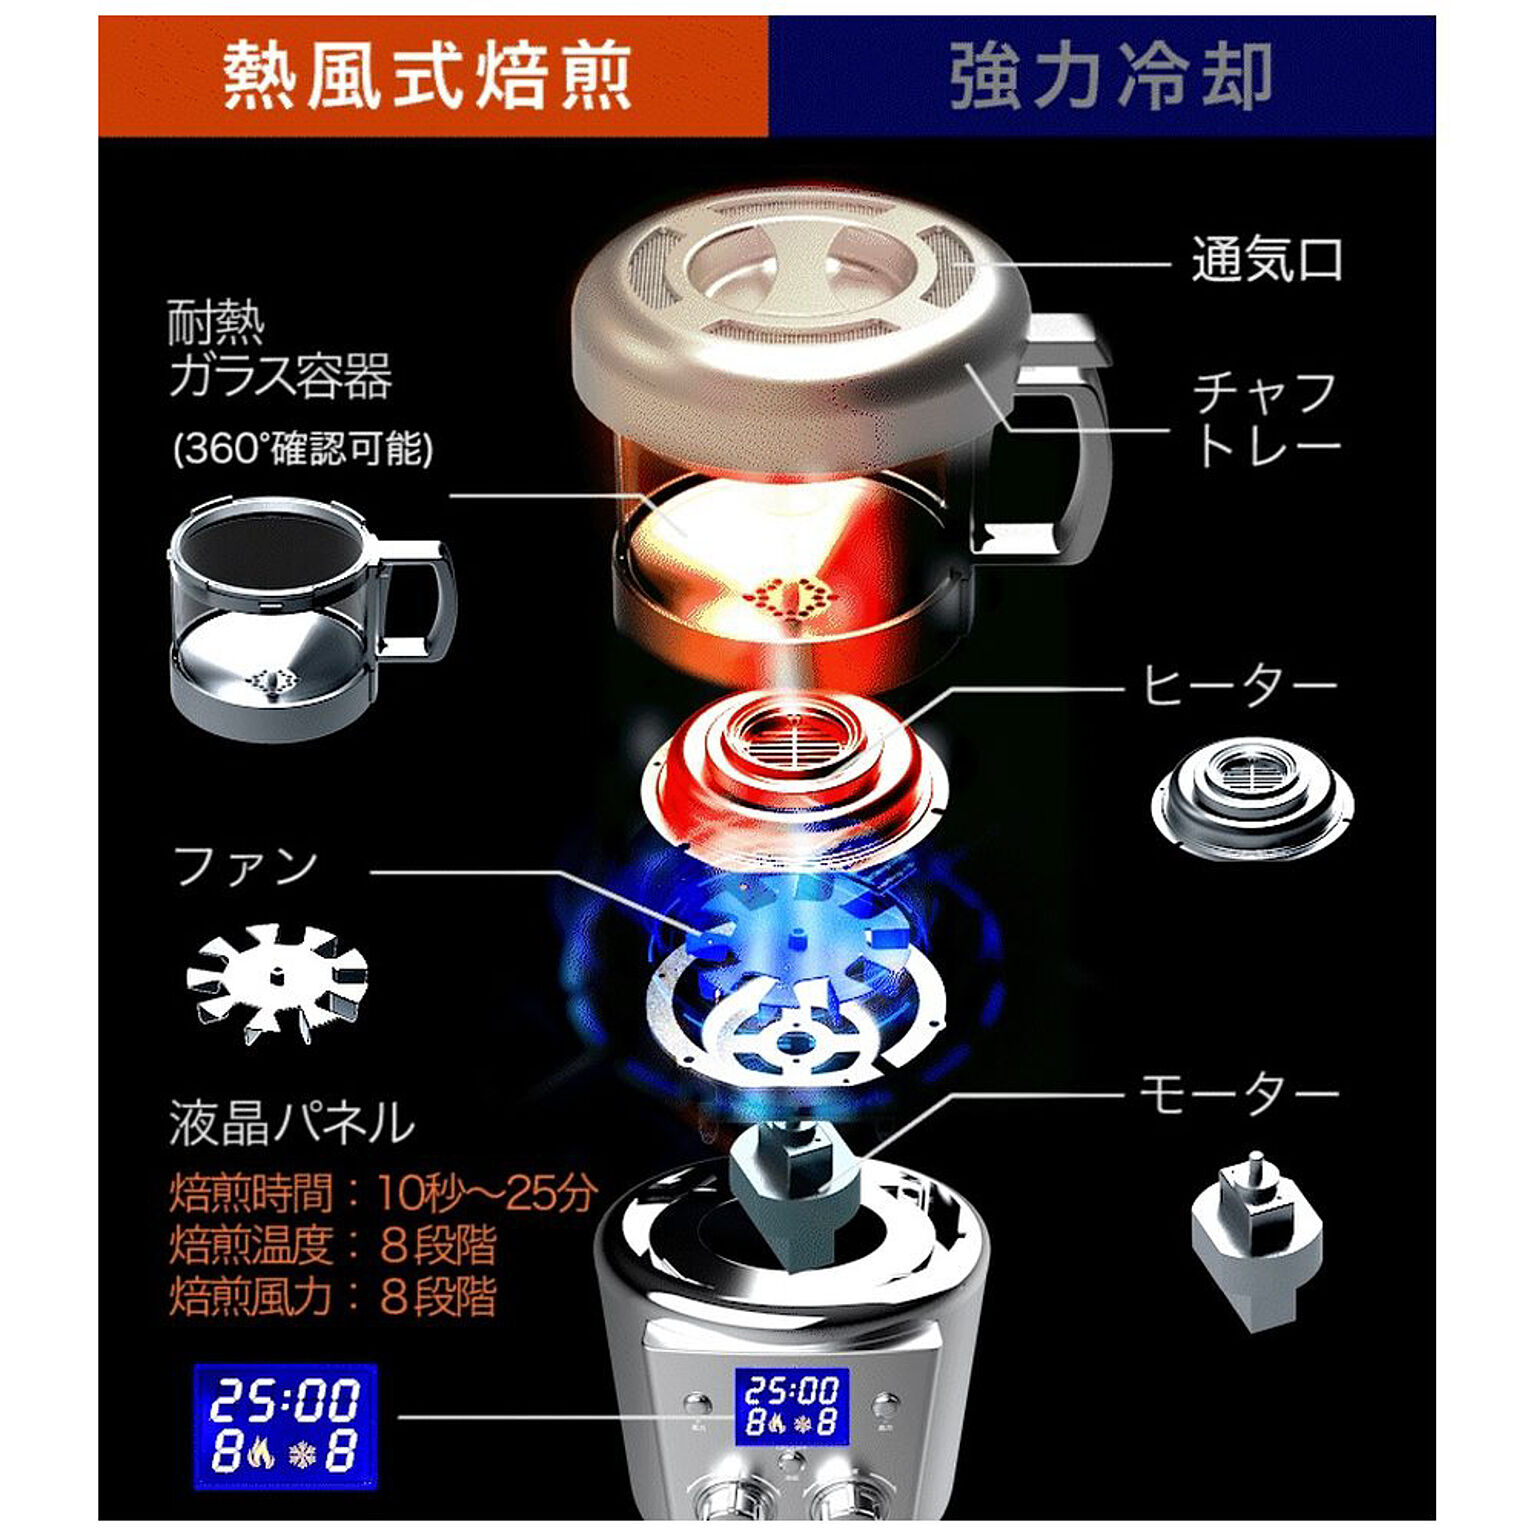 本格コーヒー 生豆焙煎機 コーヒーロースター ムラが出ない熱風式 自動冷却機能 浅煎りから深煎り可能 生豆ロースト珈琲生豆の焙煎具合が視覚で - 3